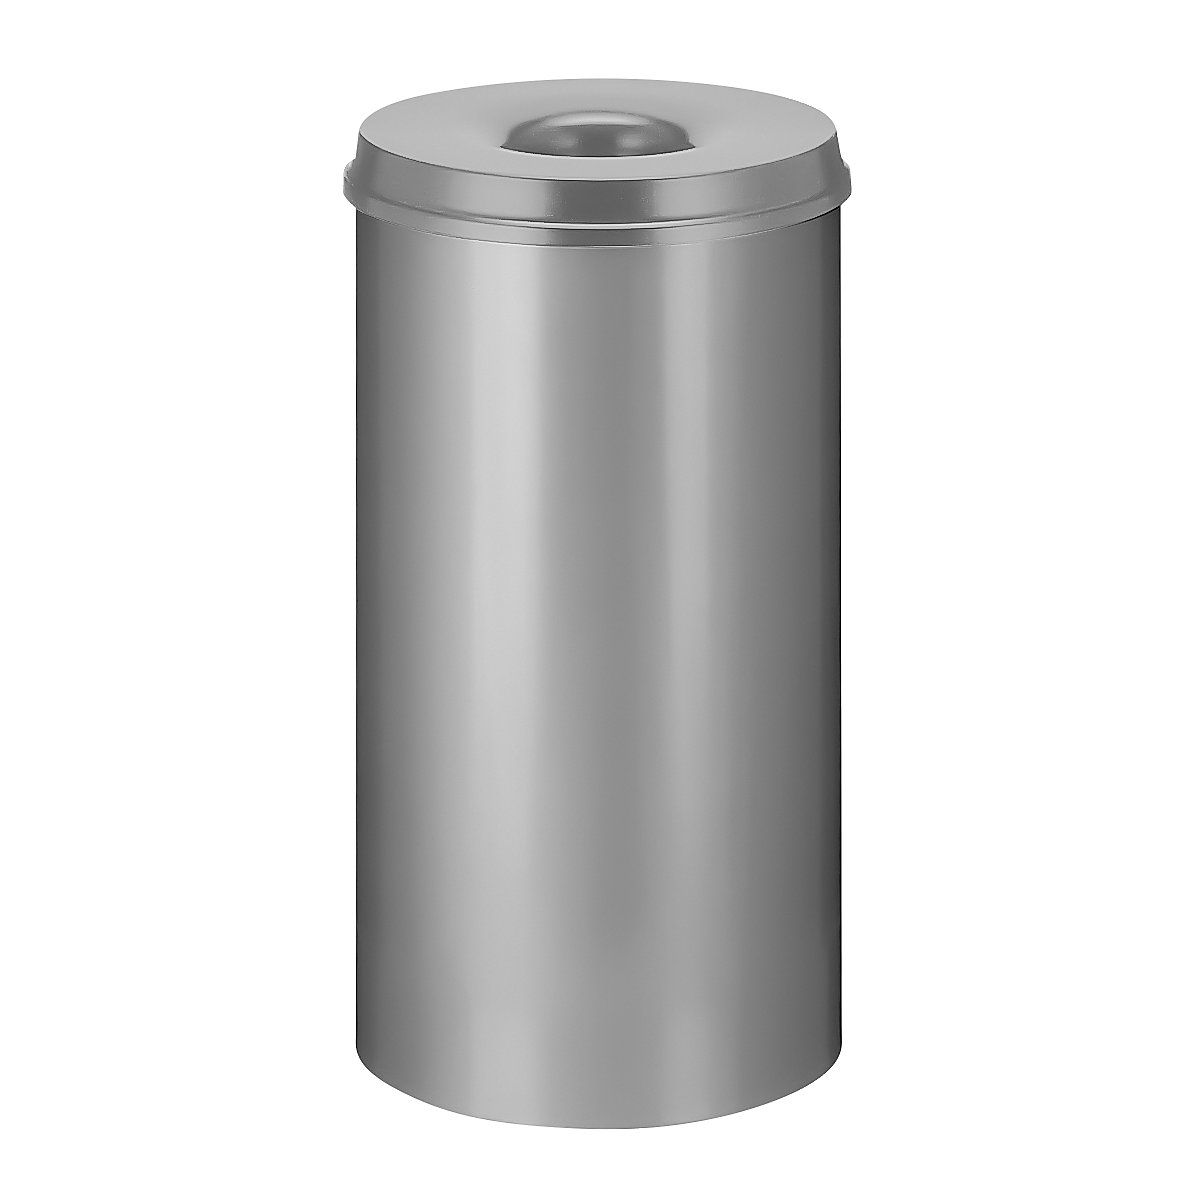 Corbeille à papier auto-extinguible, capacité 50 l, h x Ø 625 x 335 mm, corps gris / étouffoir gris